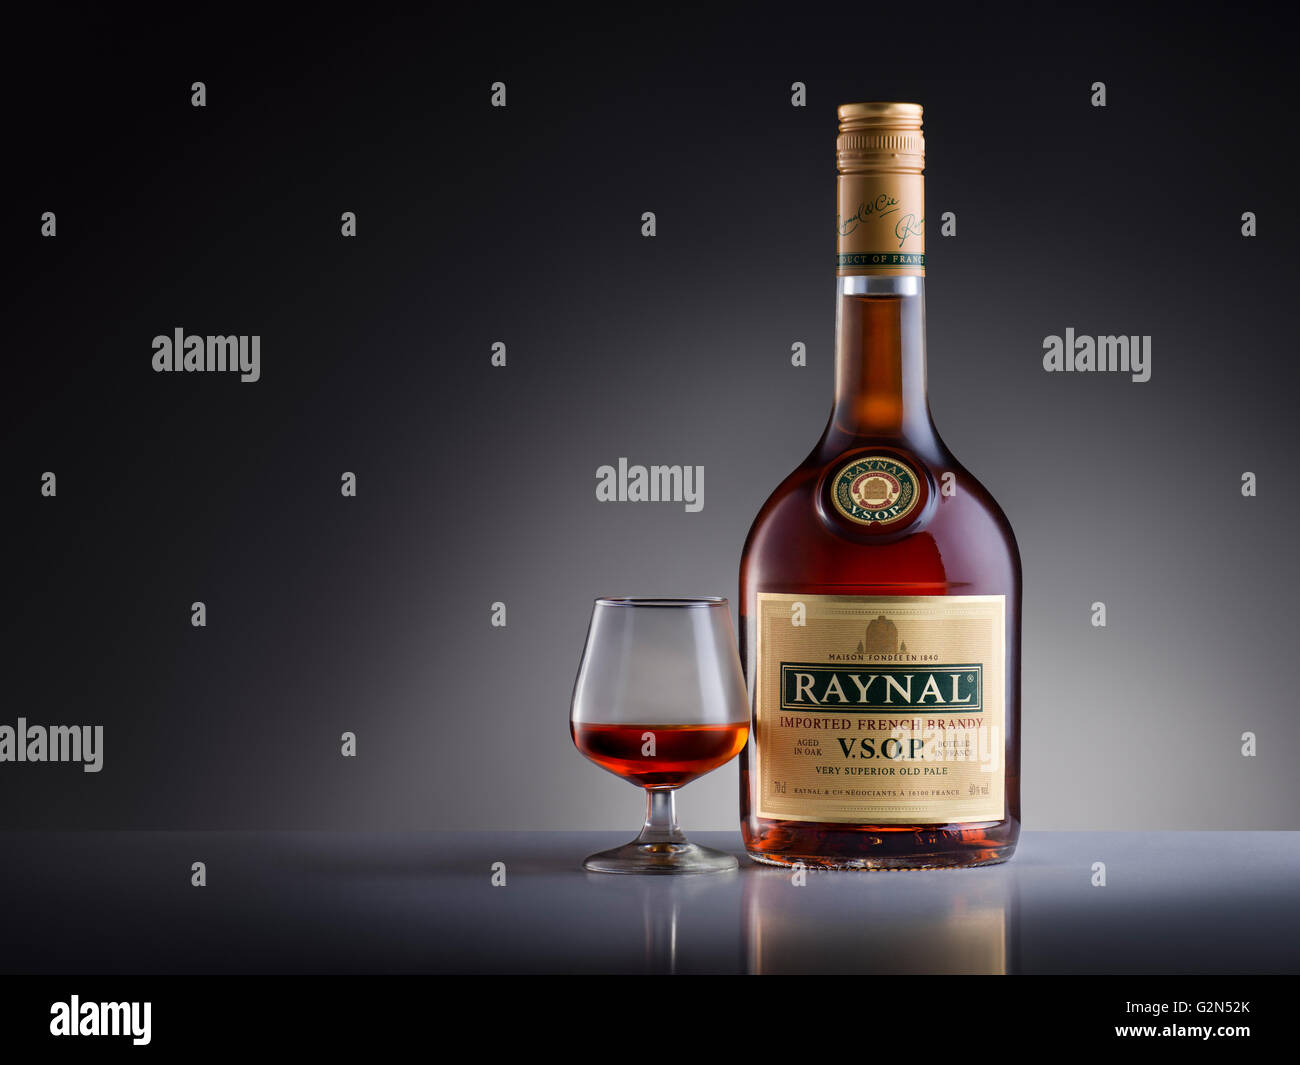 Estudio de imágenes de la botella con una copa de brandy Raynal. Foto de stock